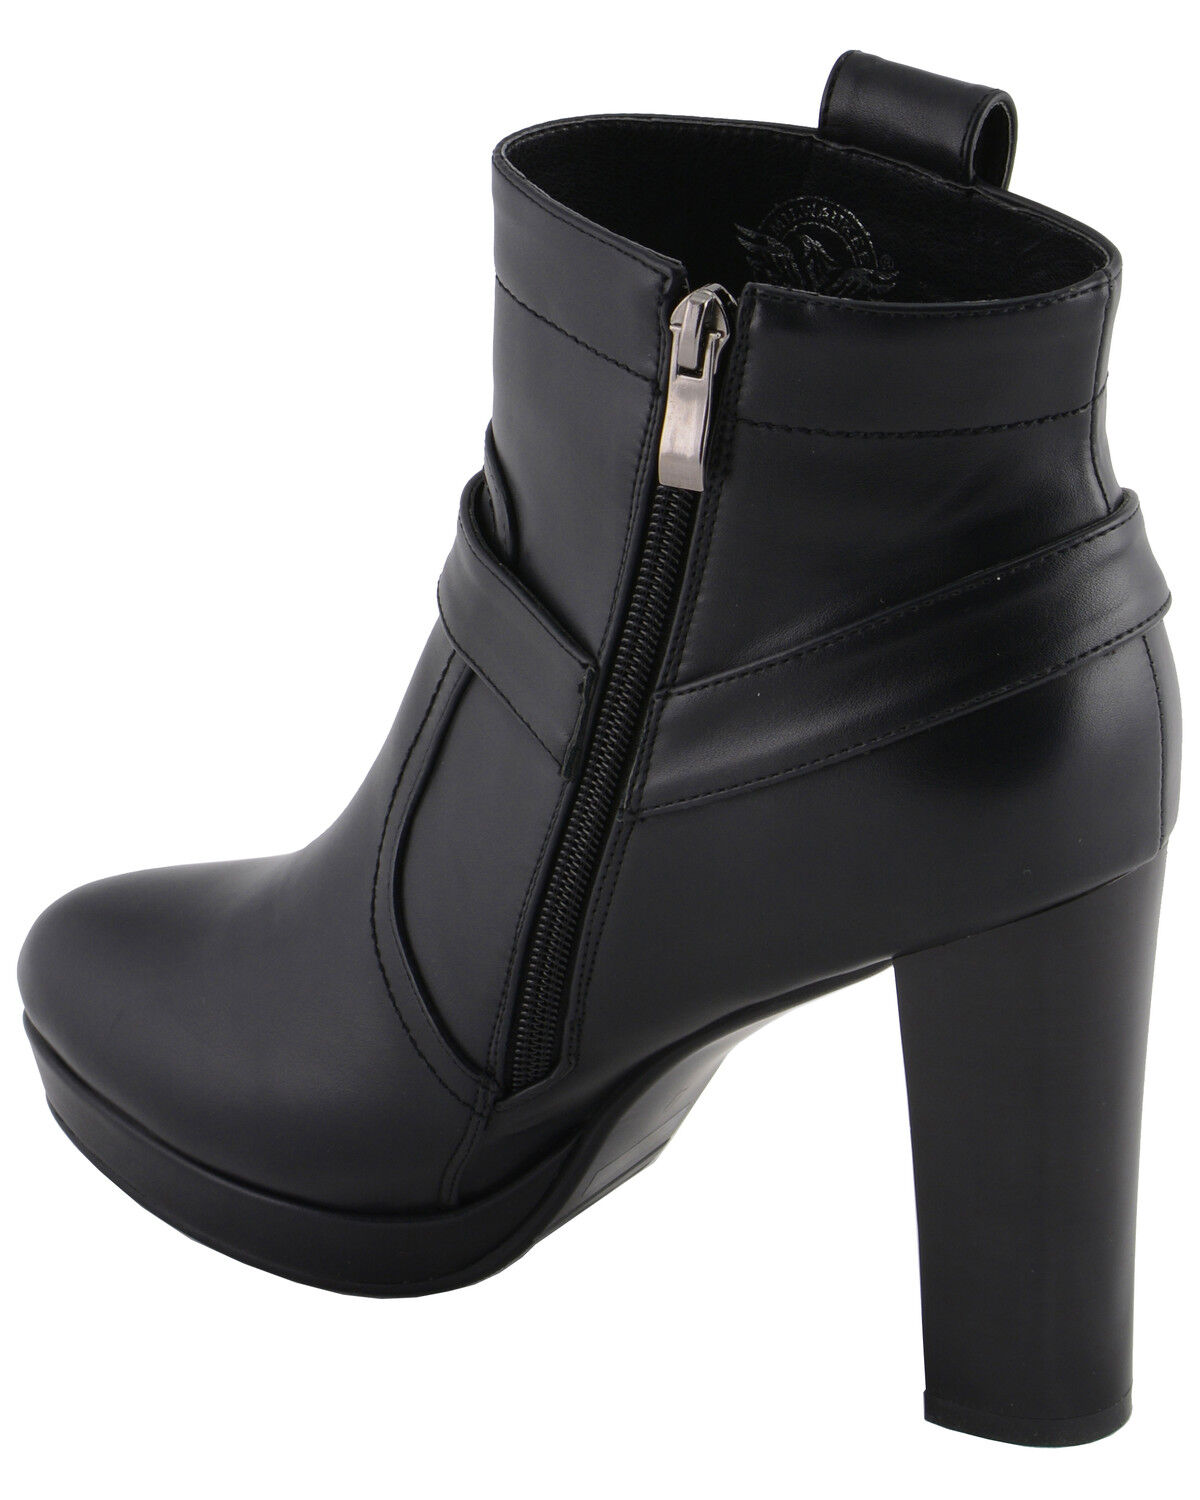 black booties medium heel